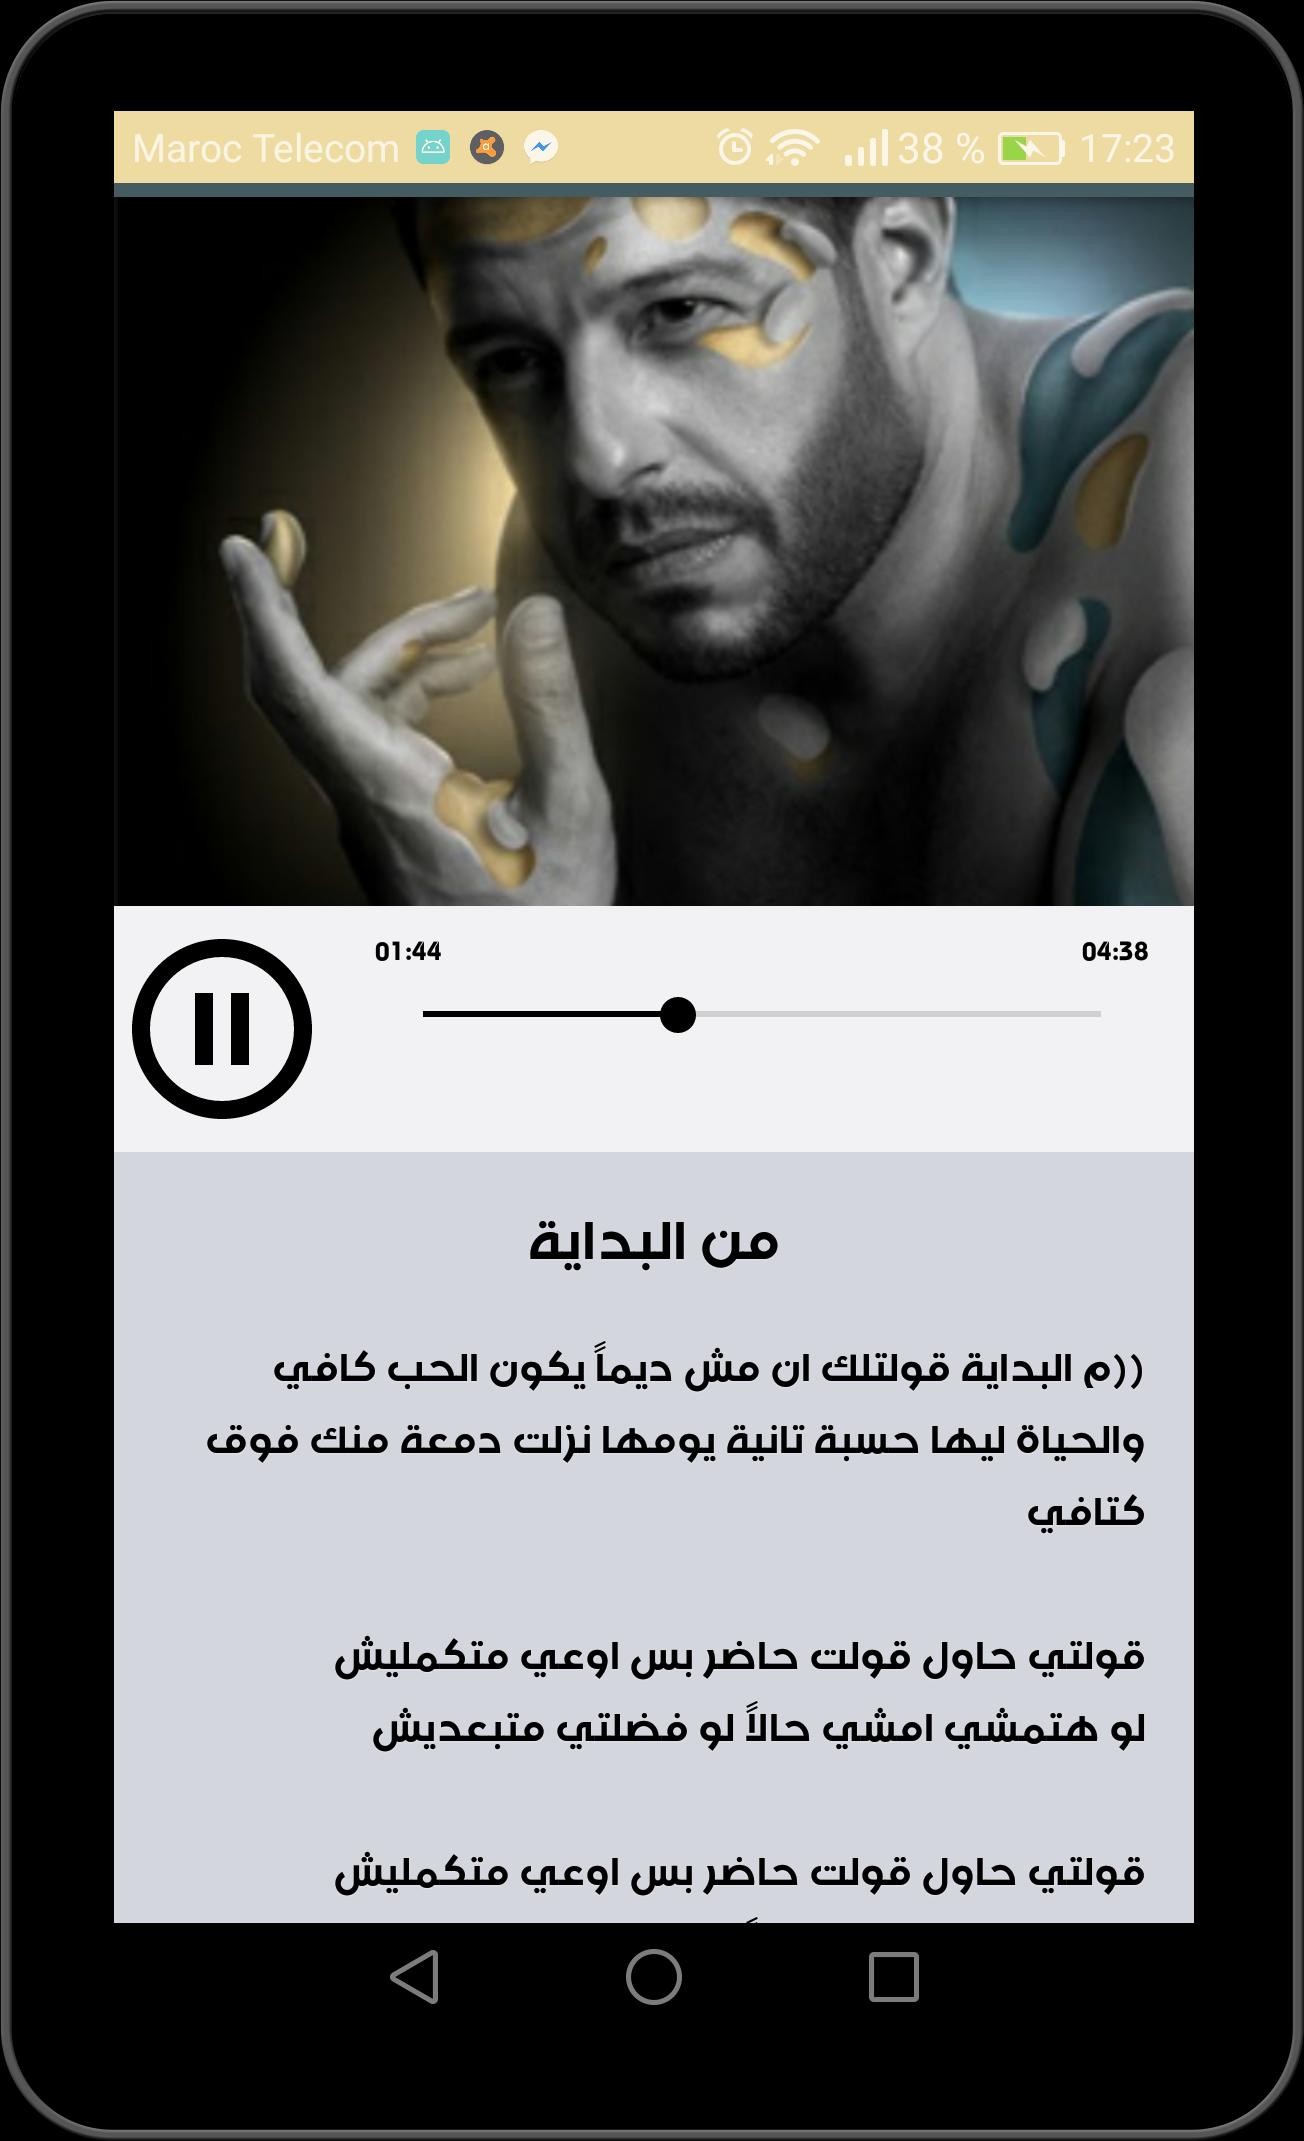 اغاني محمد حماقي ألبوم 2019 الجديد بدون انترنت for Android - APK Download